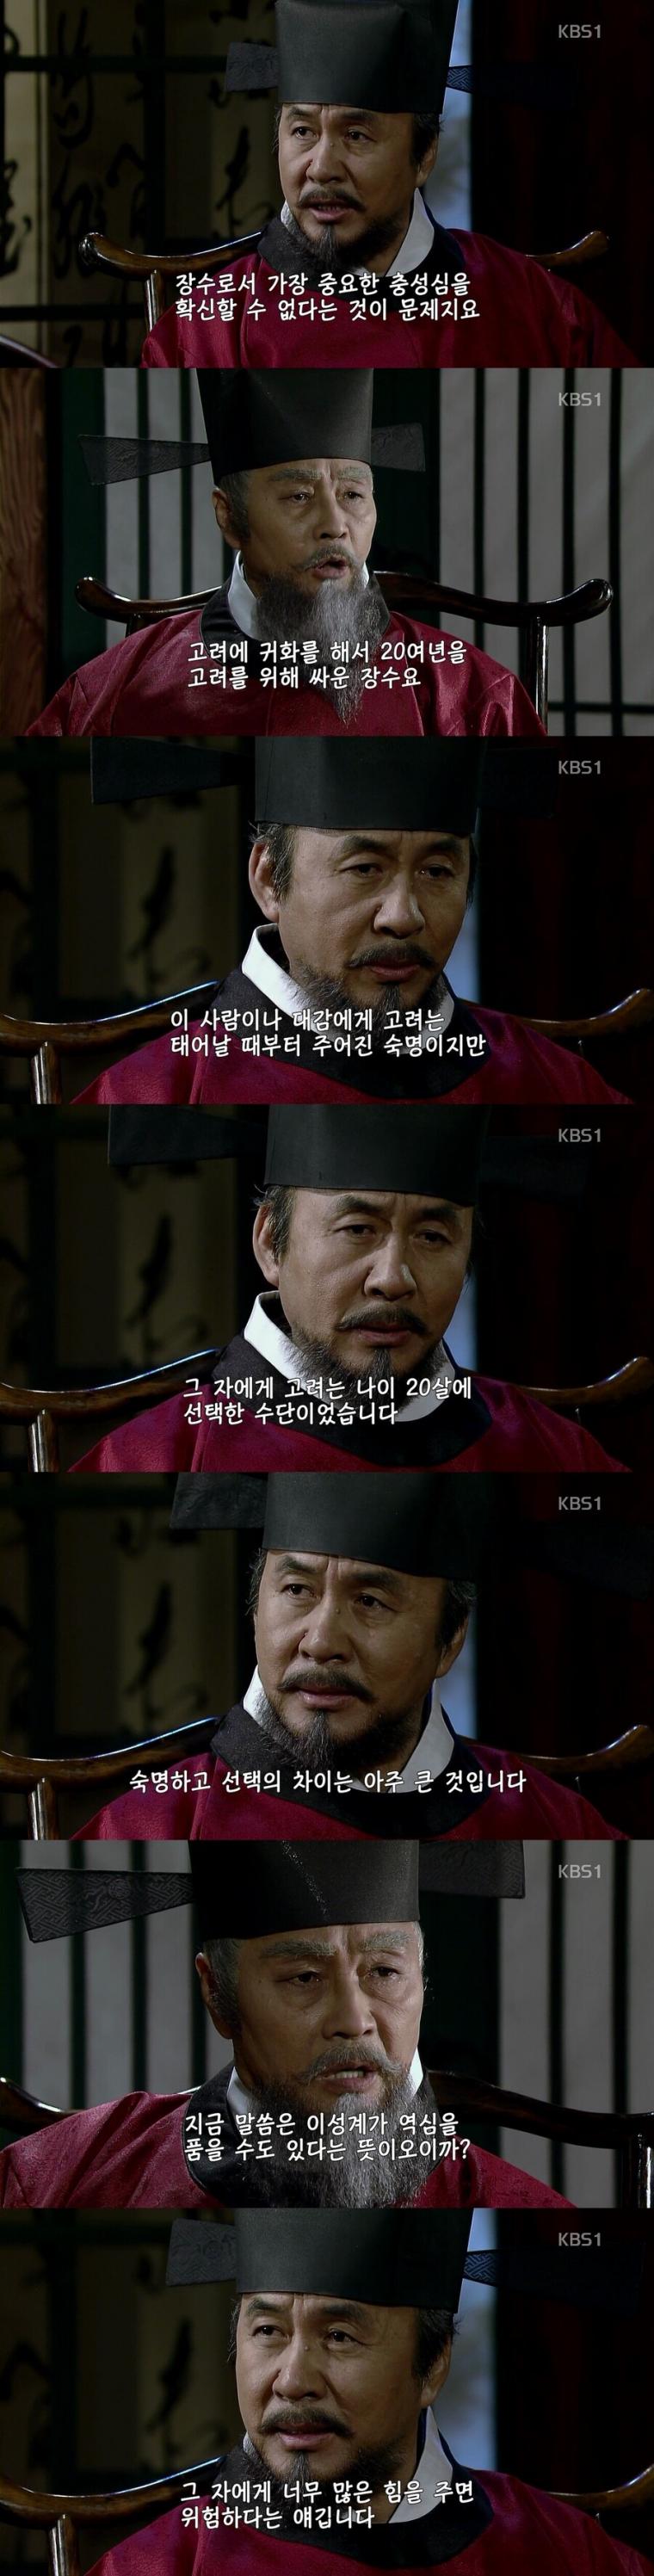 한국 사극에서 보기 힘들었던 독특한 캐릭터.jpg